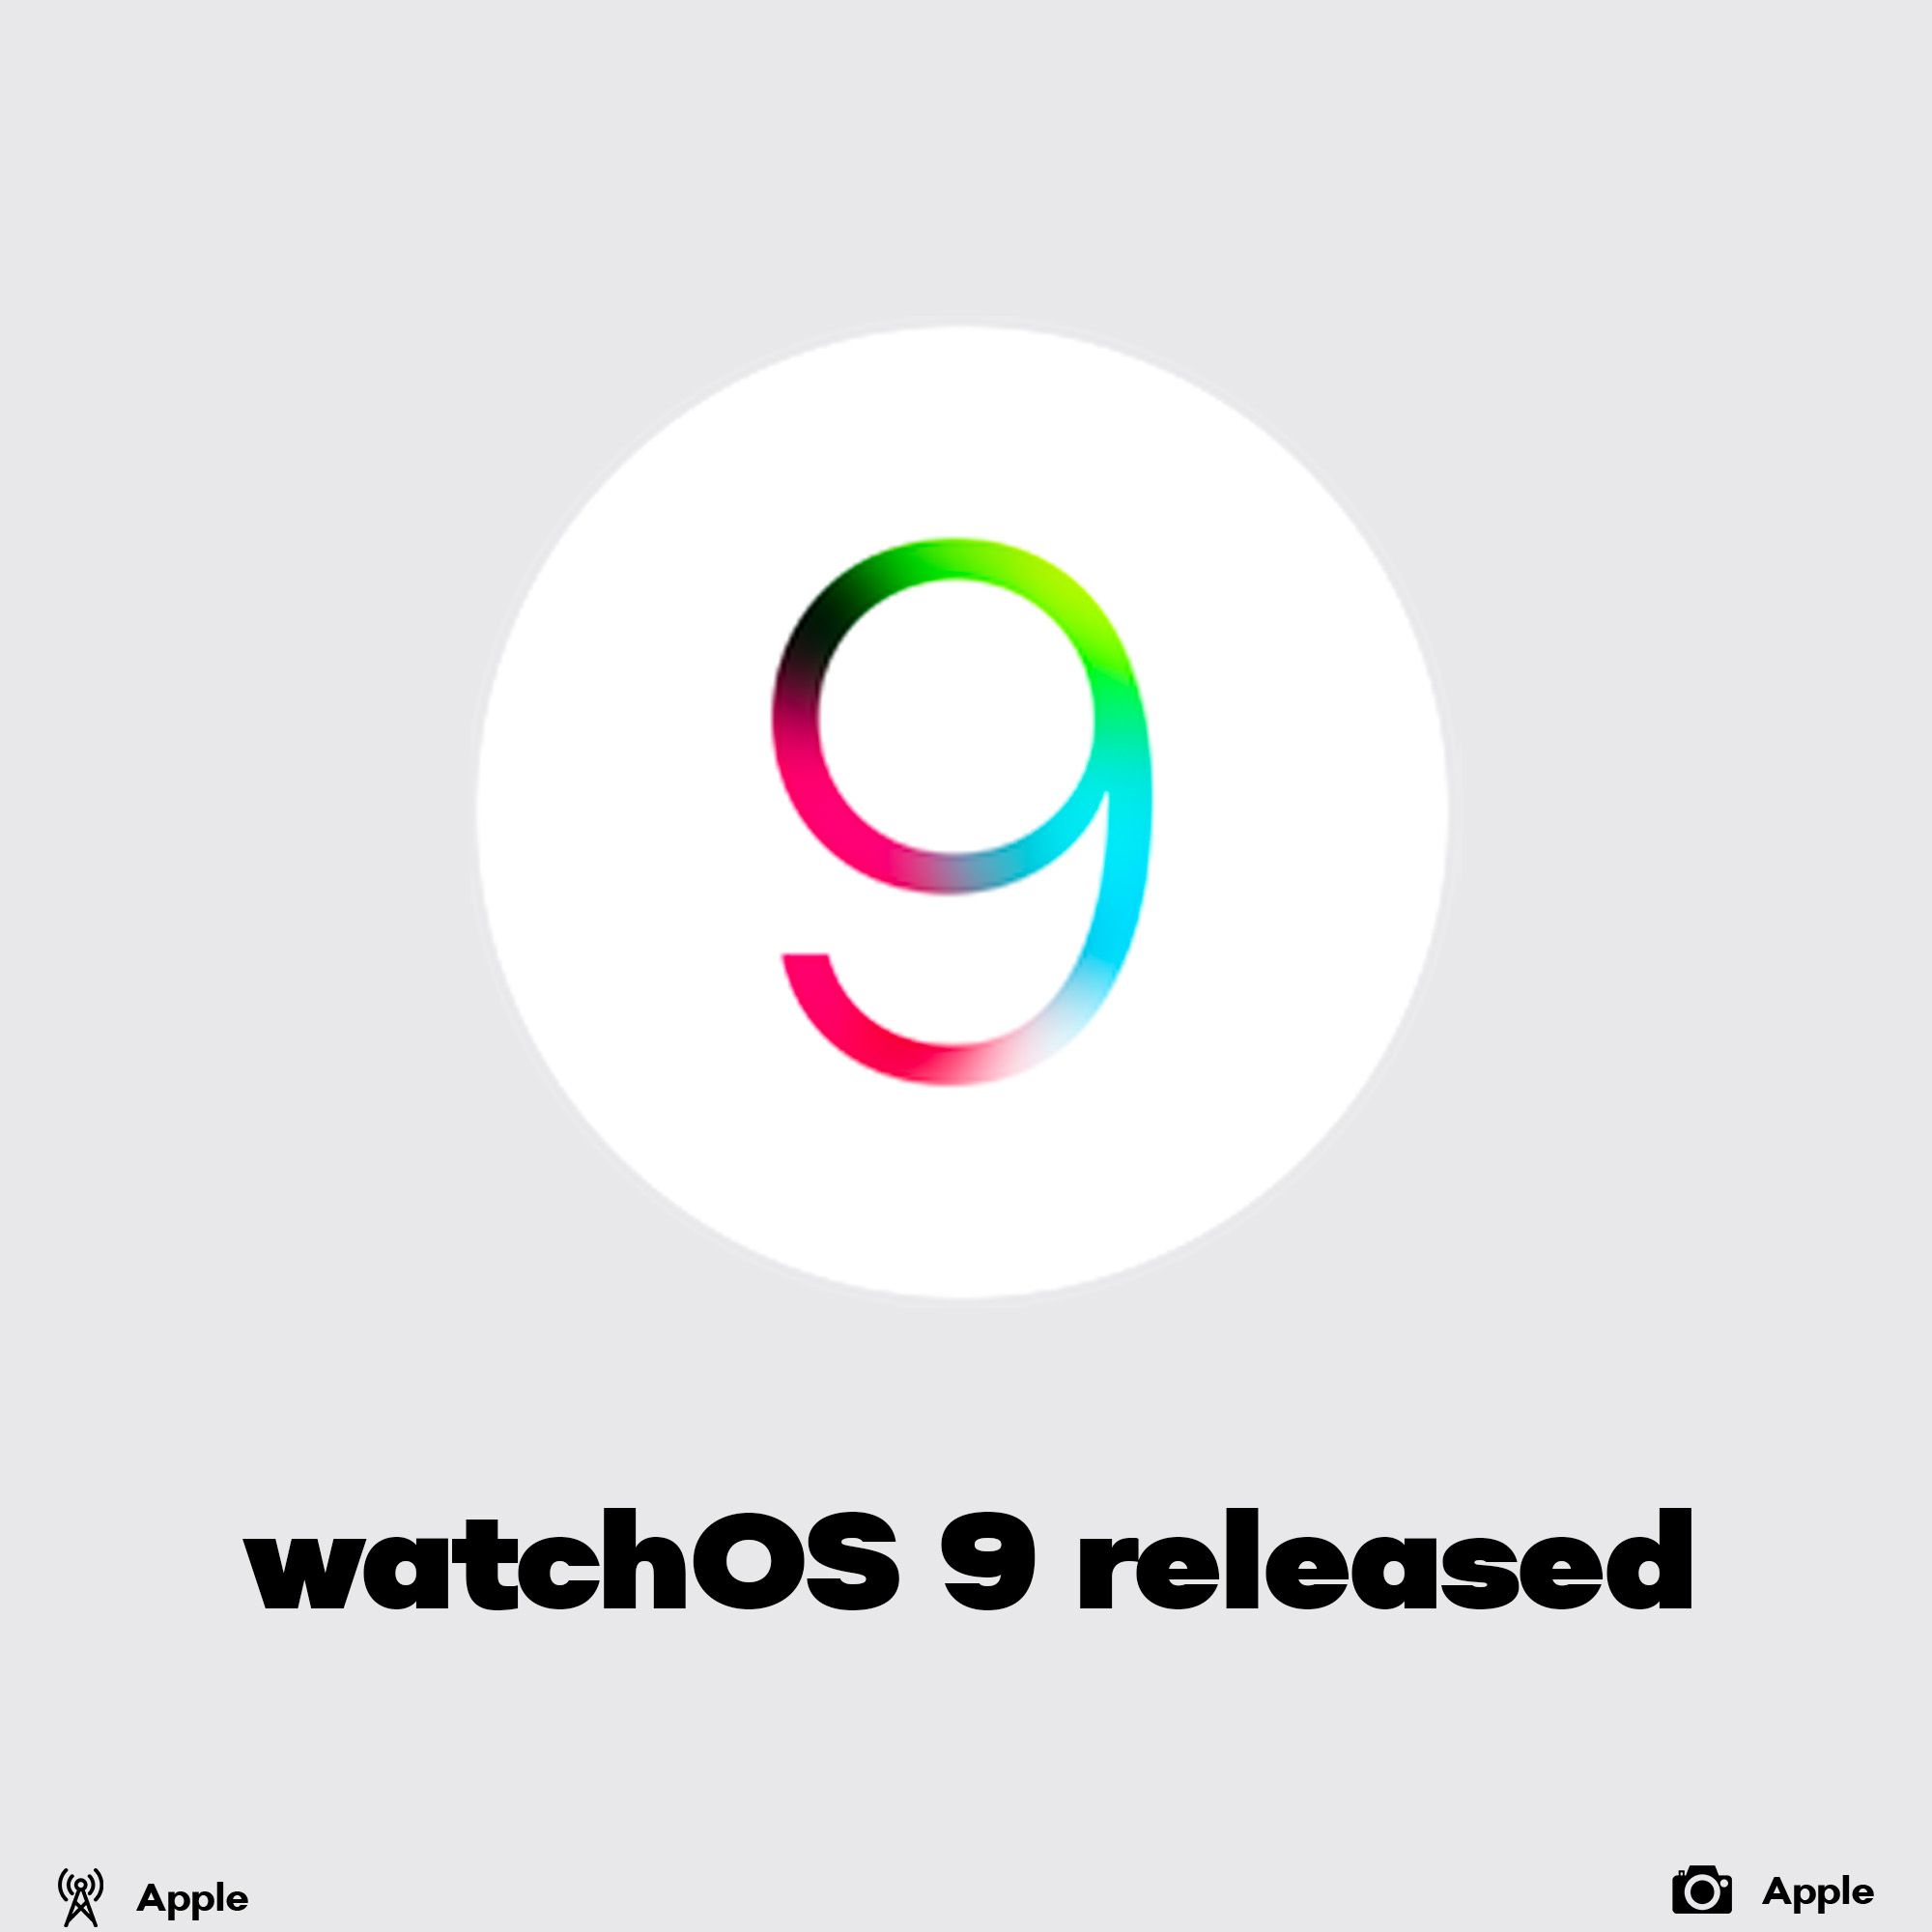 watchOS 9 released